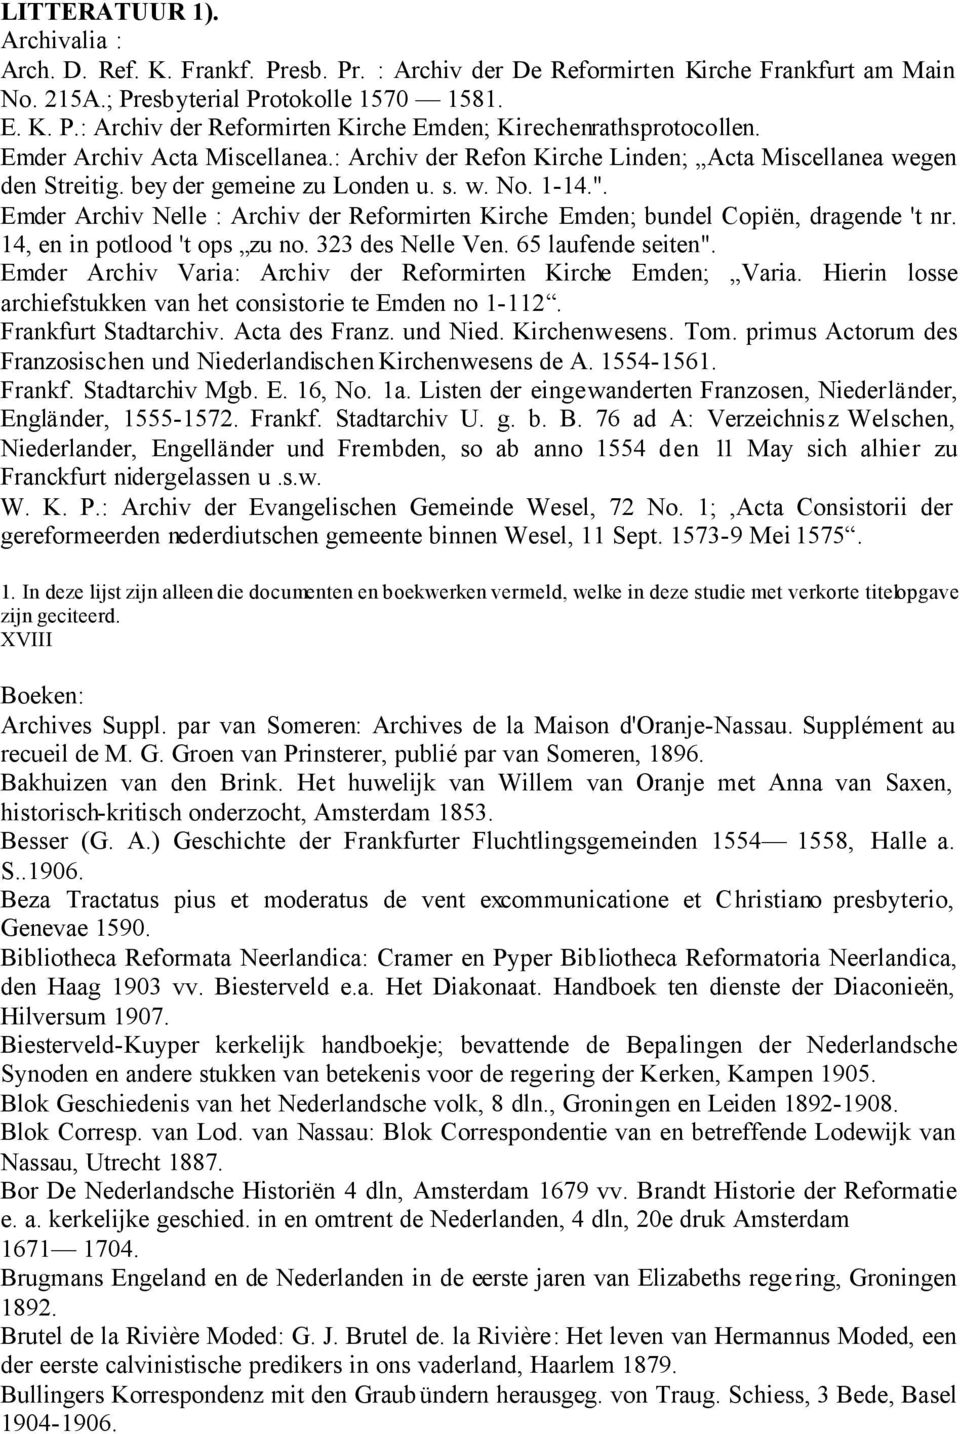 Emder Archiv Nelle : Archiv der Reformirten Kirche Emden; bundel Copiën, dragende 't nr. 14, en in potlood 't ops zu no. 323 des Nelle Ven. 65 laufende seiten".